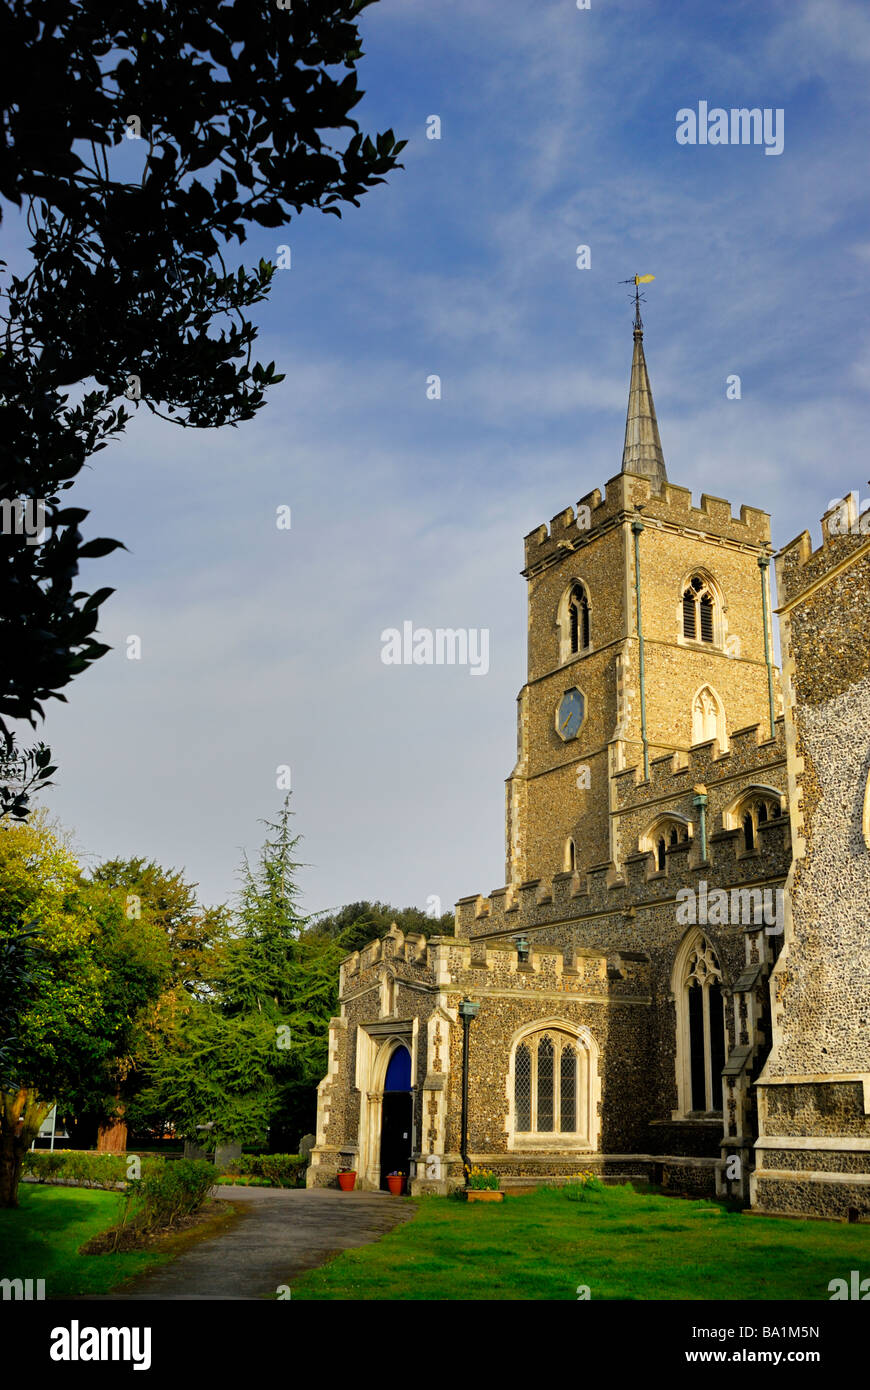 Parish church St Mary, Ware, Hertfordshire, England, UK Stock Photo